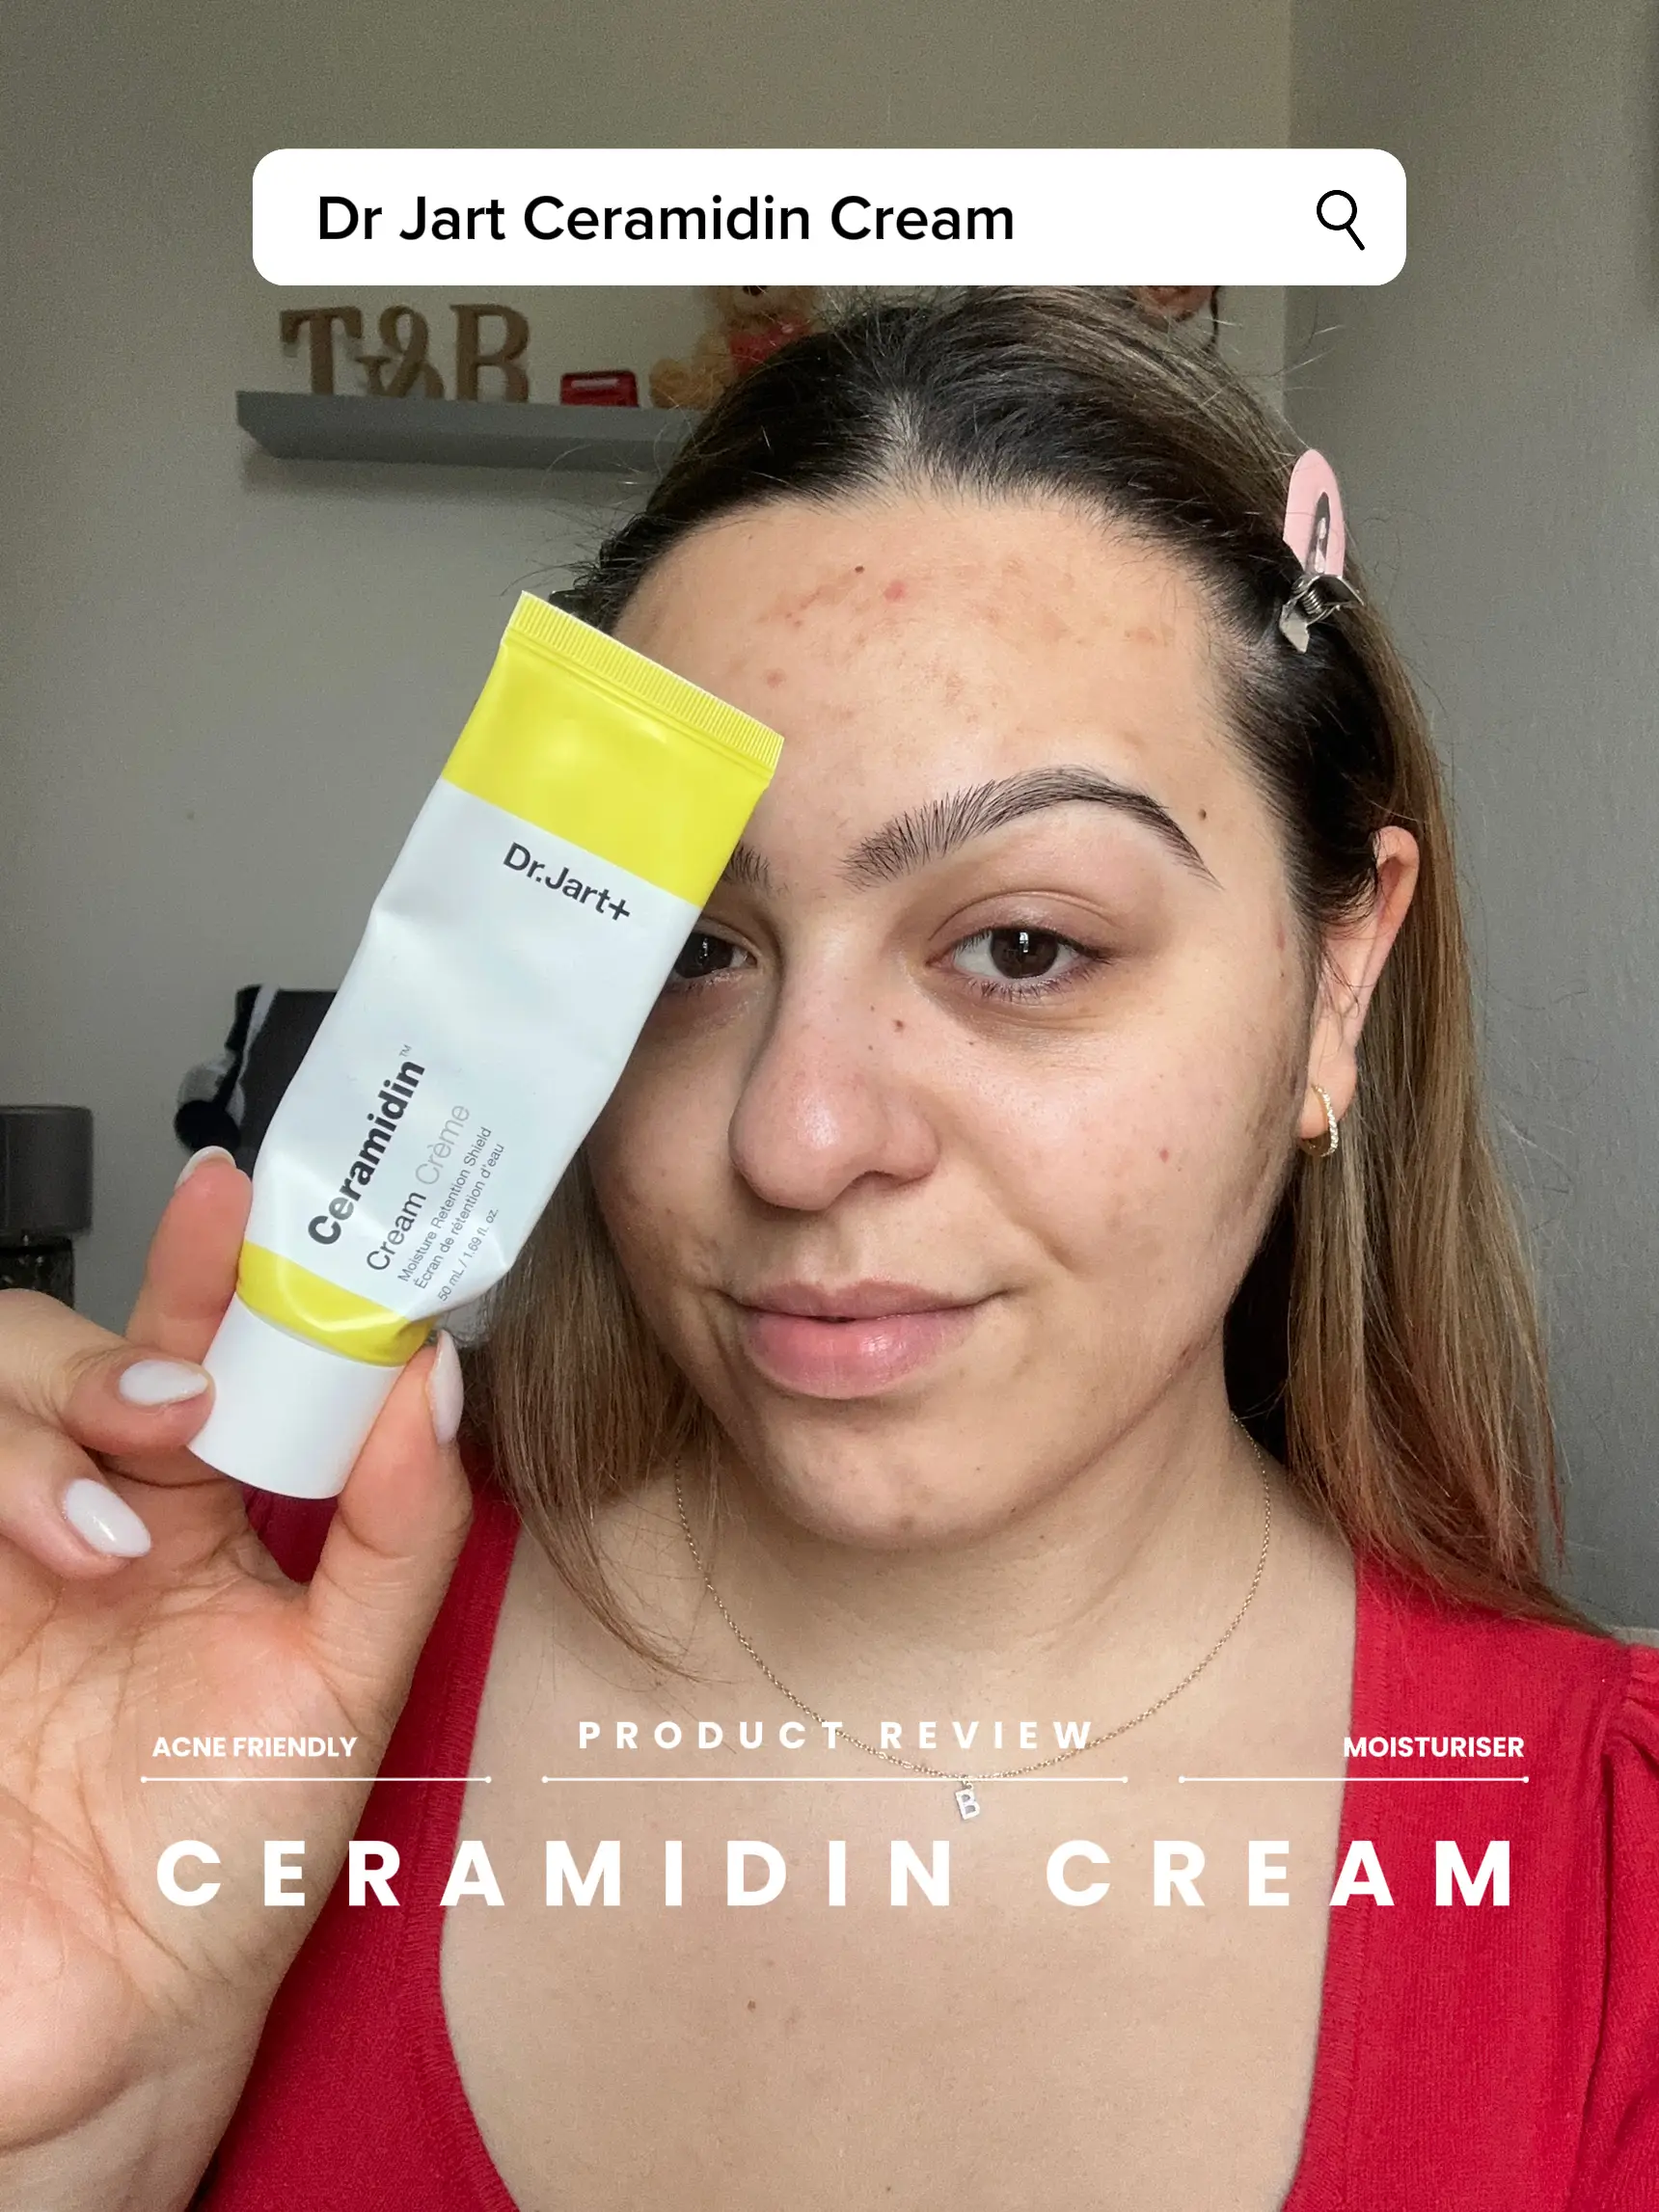 Should You Try the Dr. Jart Ceramidin Cream? An HONEST Review